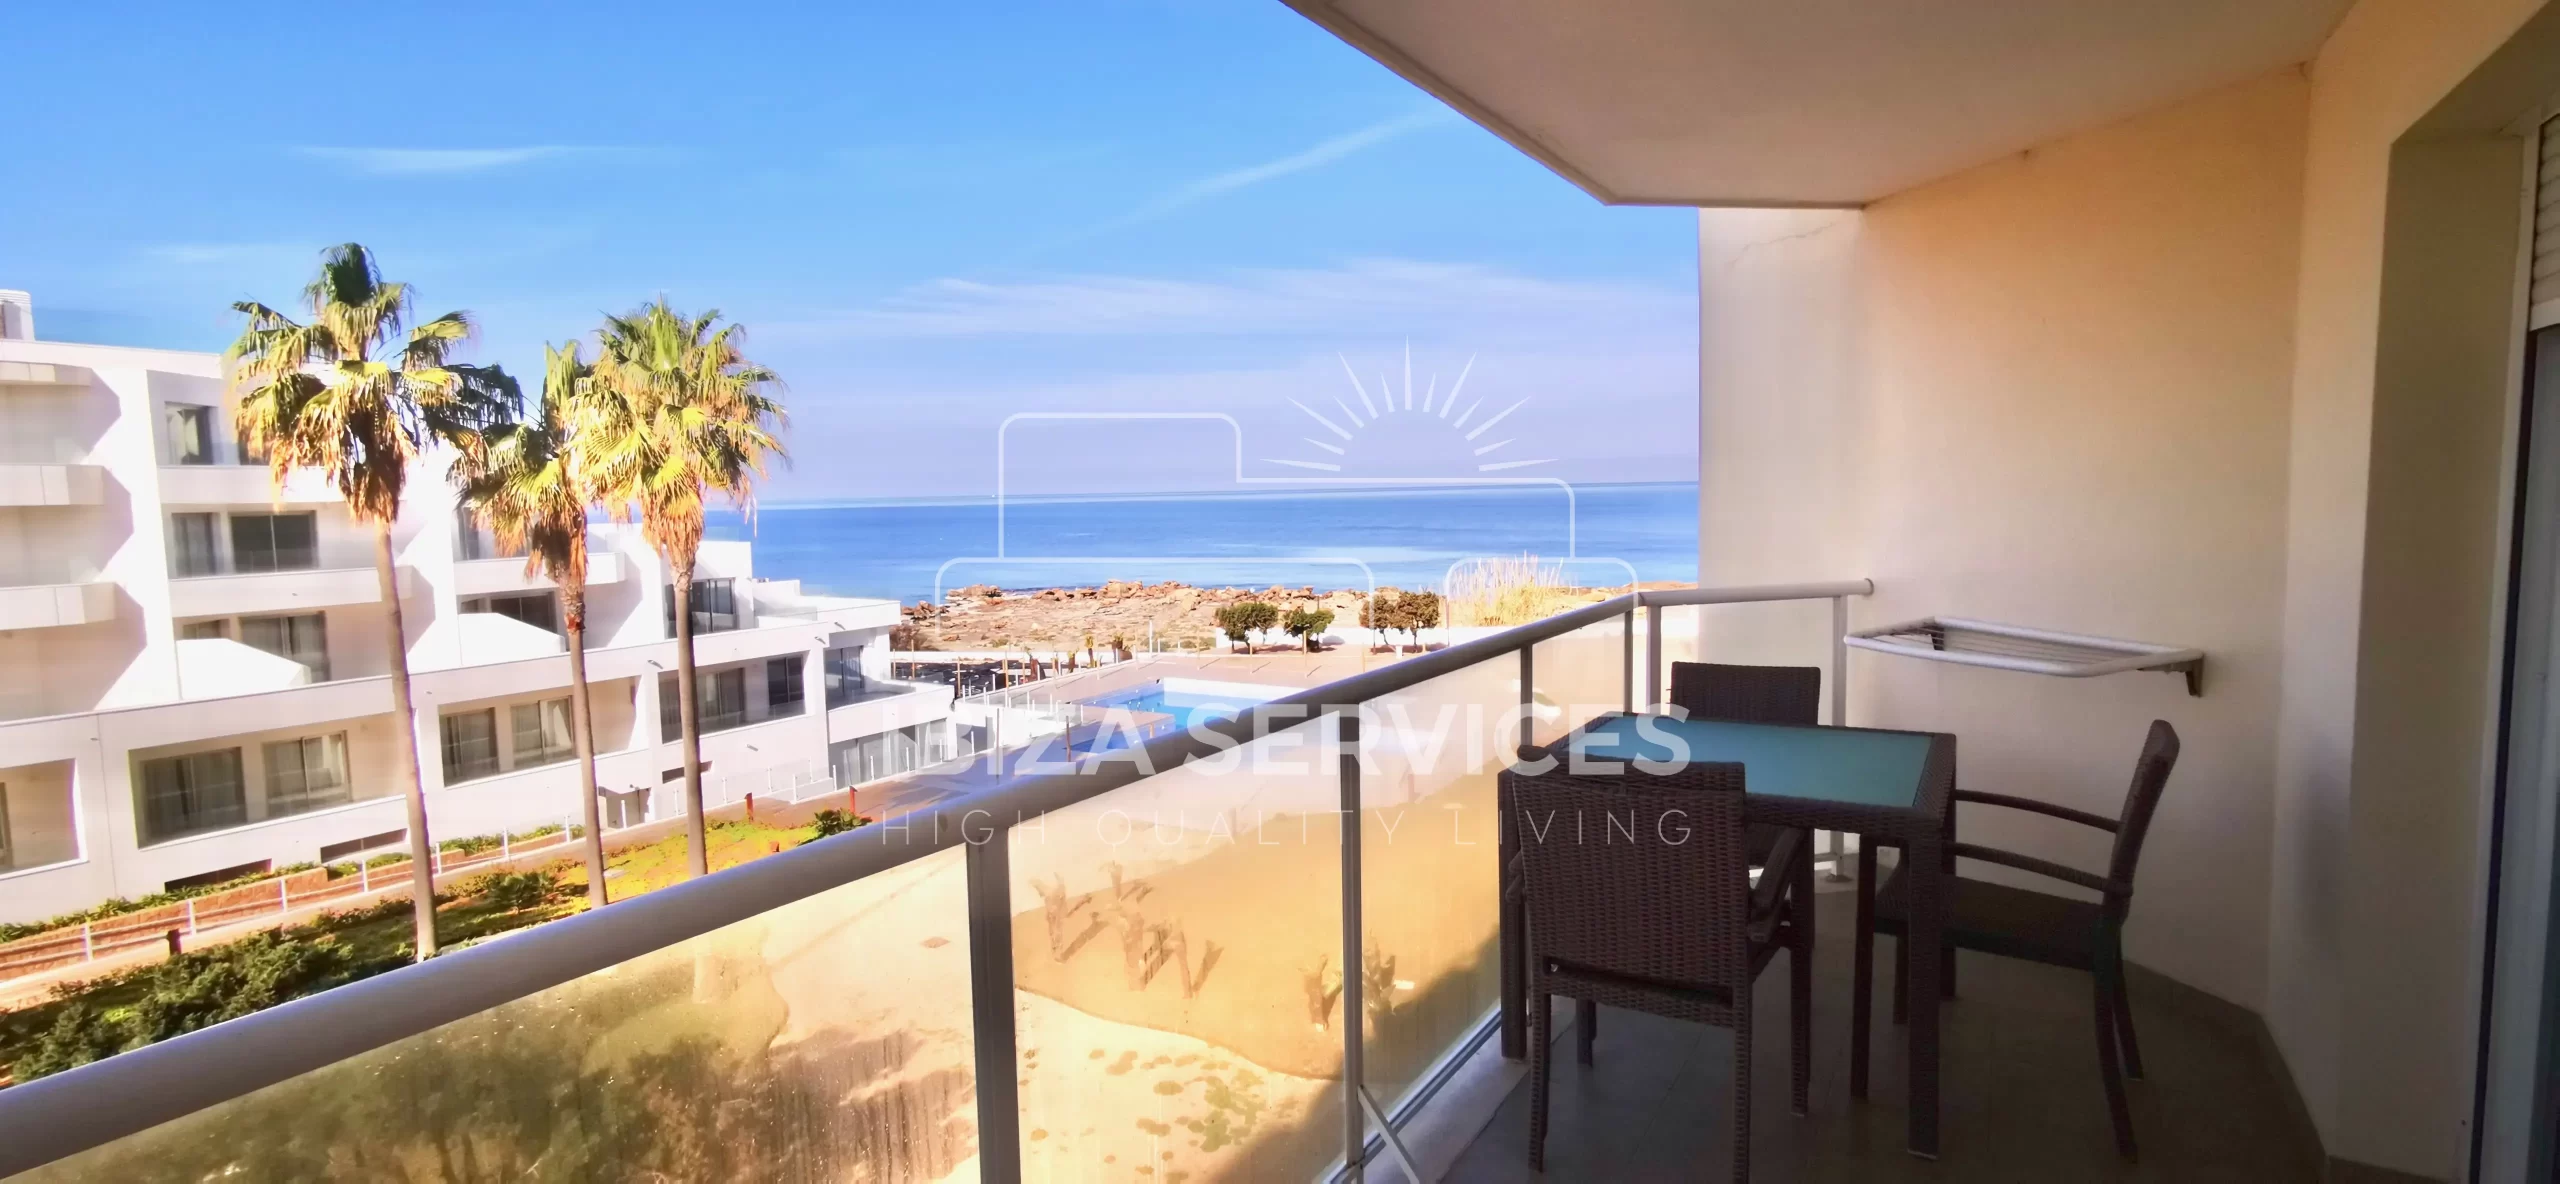 Apartamento espacioso con vistas al mar en venta en la costa oeste de Ibiza.